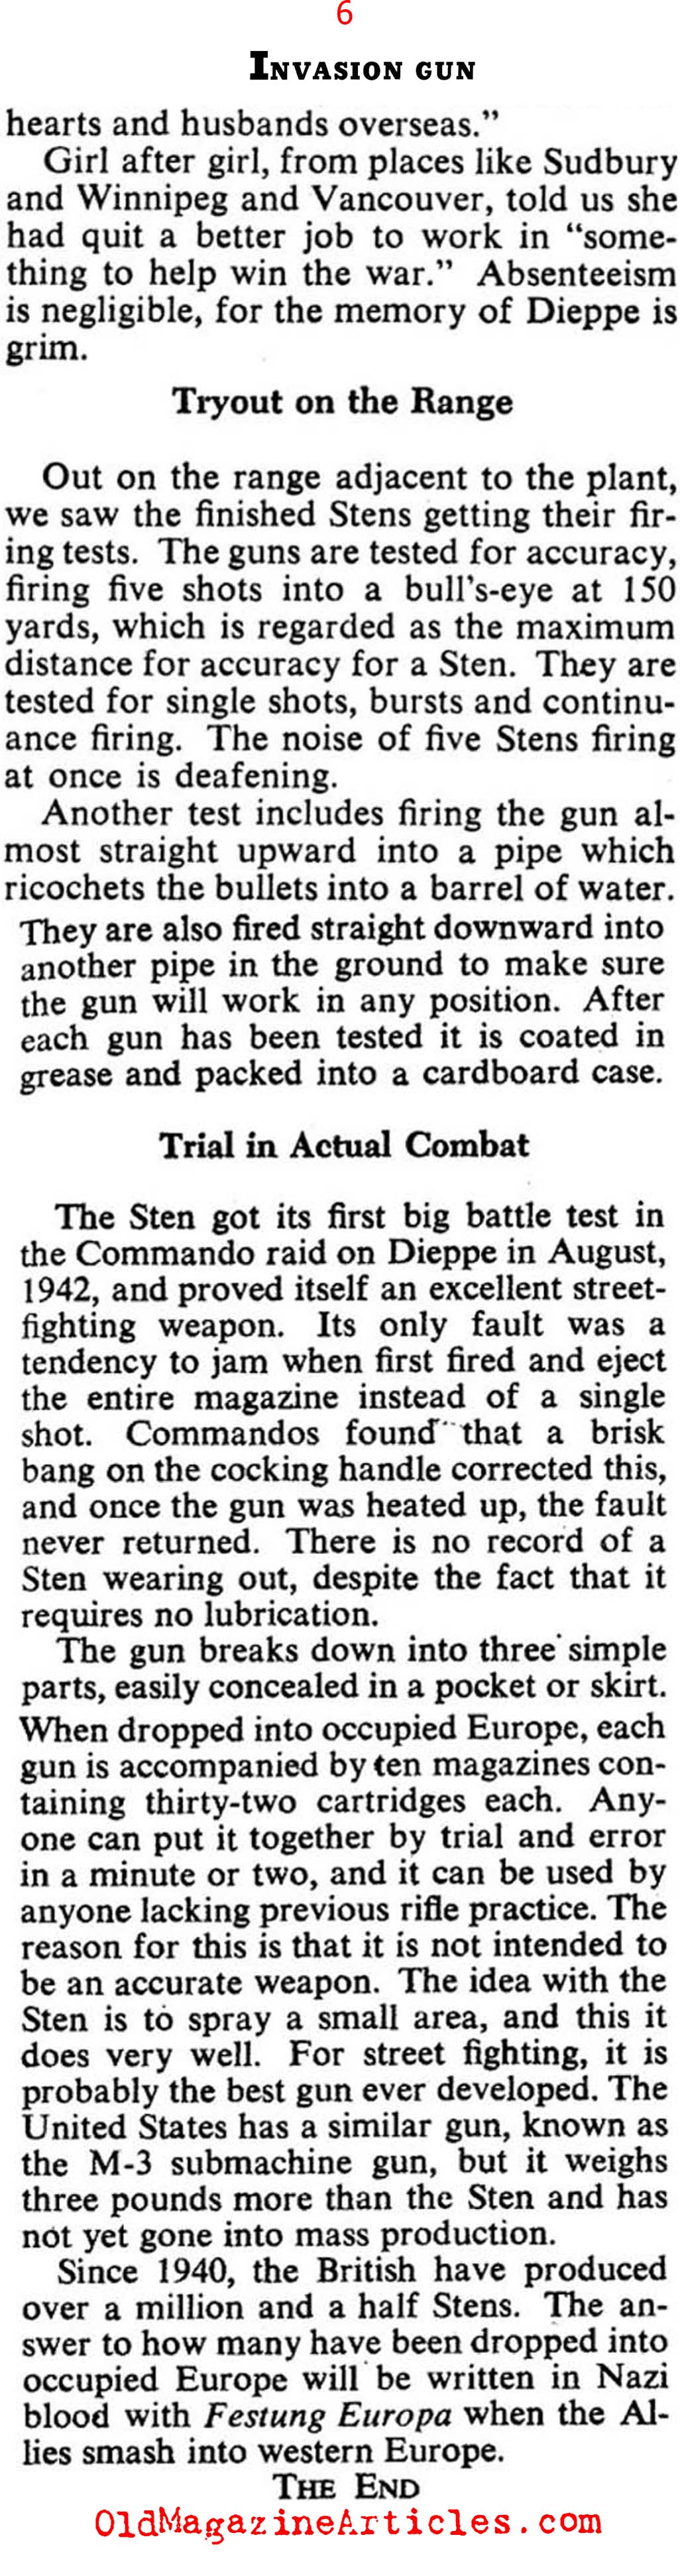 The Sten Gun (Collier's Magazine, 1943)